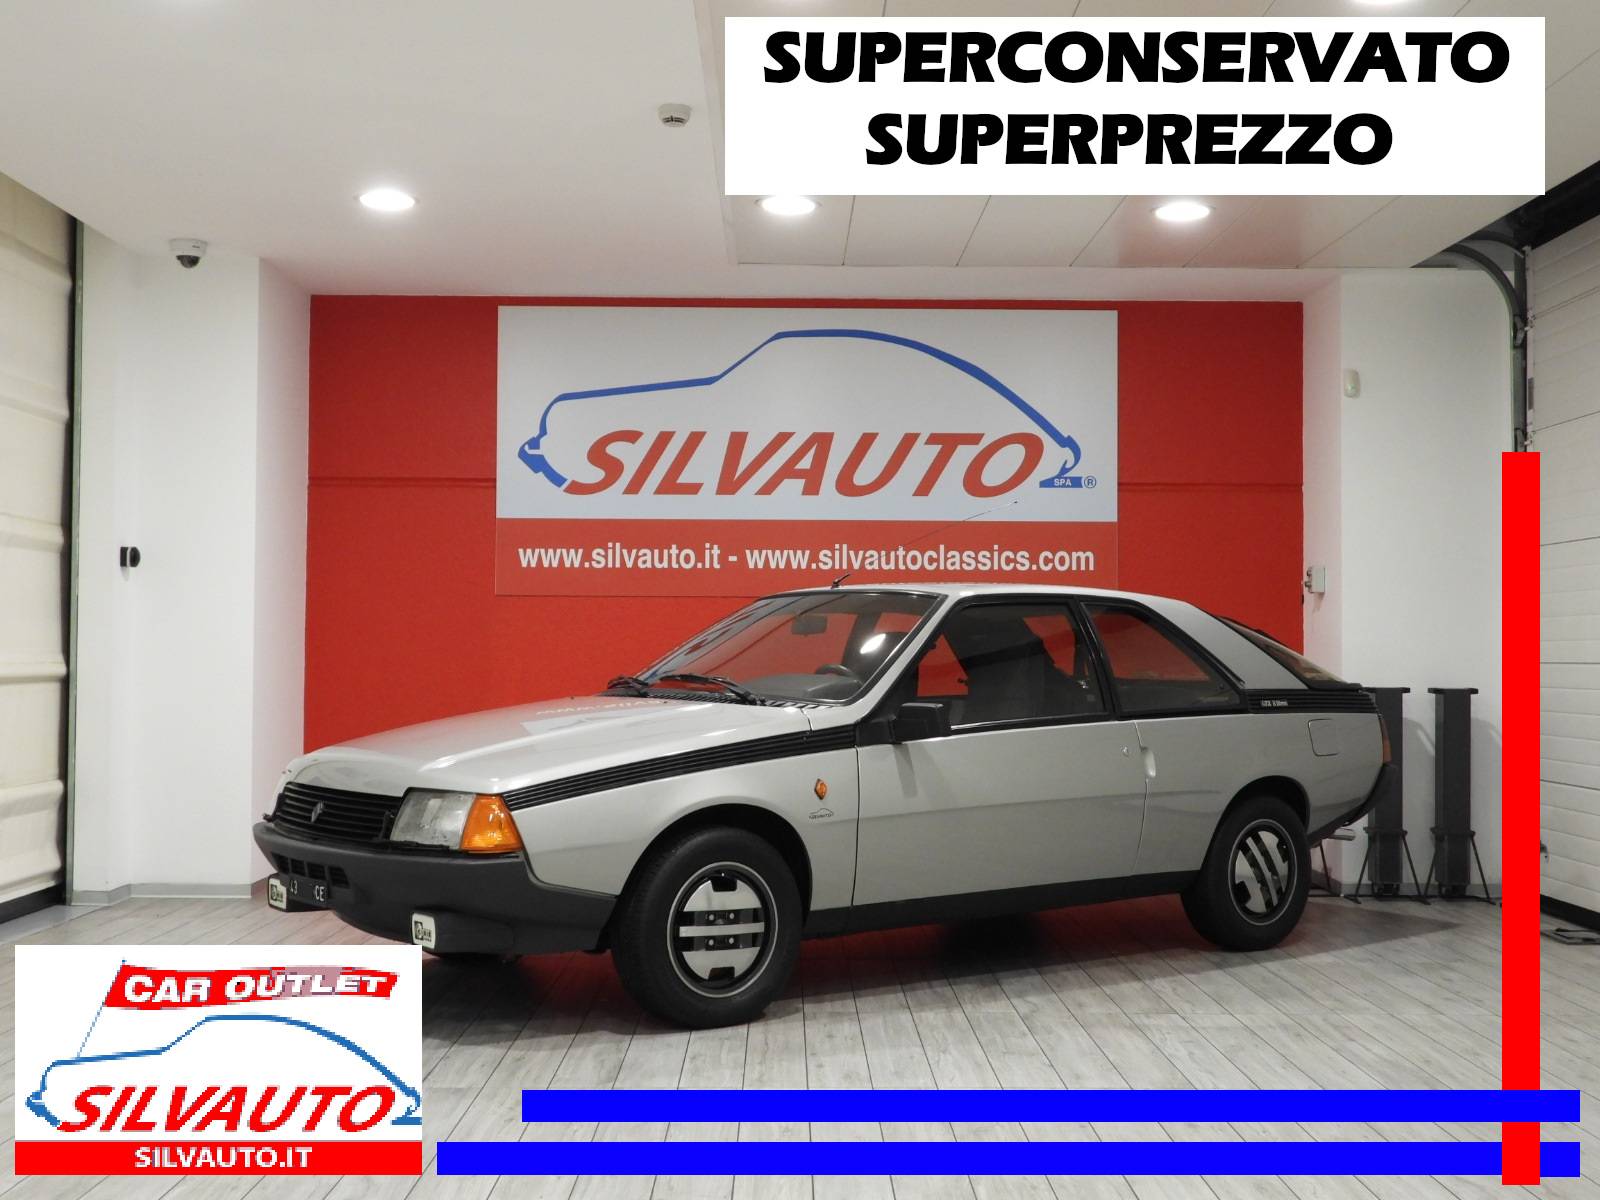 Auto-Service und Ersatzteile - Silvauto